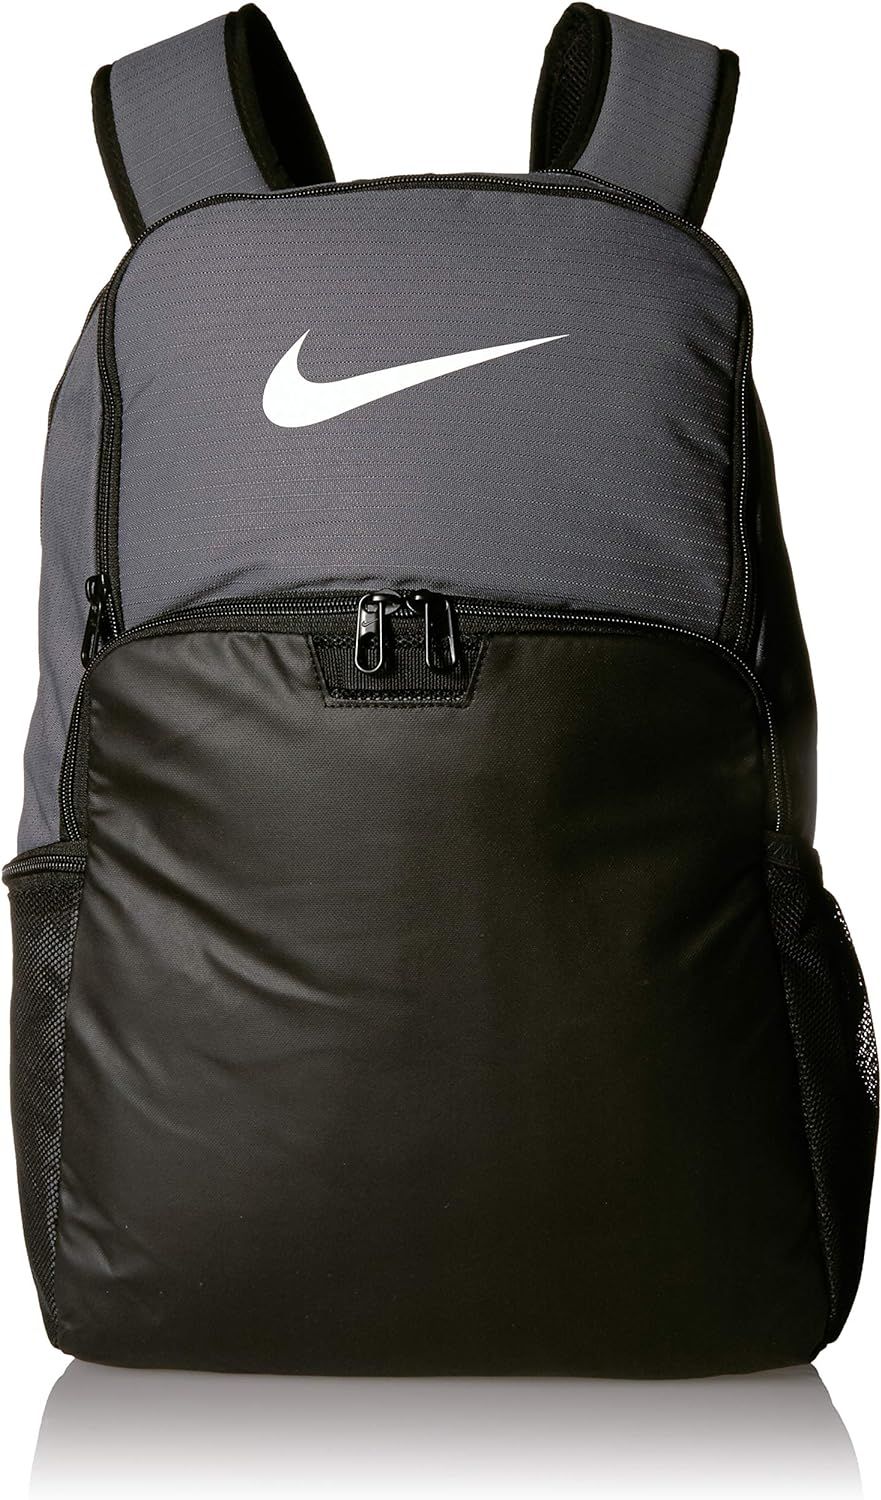 NIKE Brasilia XLarge Backpack 9.0, Flint Grey/Black/White, Misc | Amazon (US)